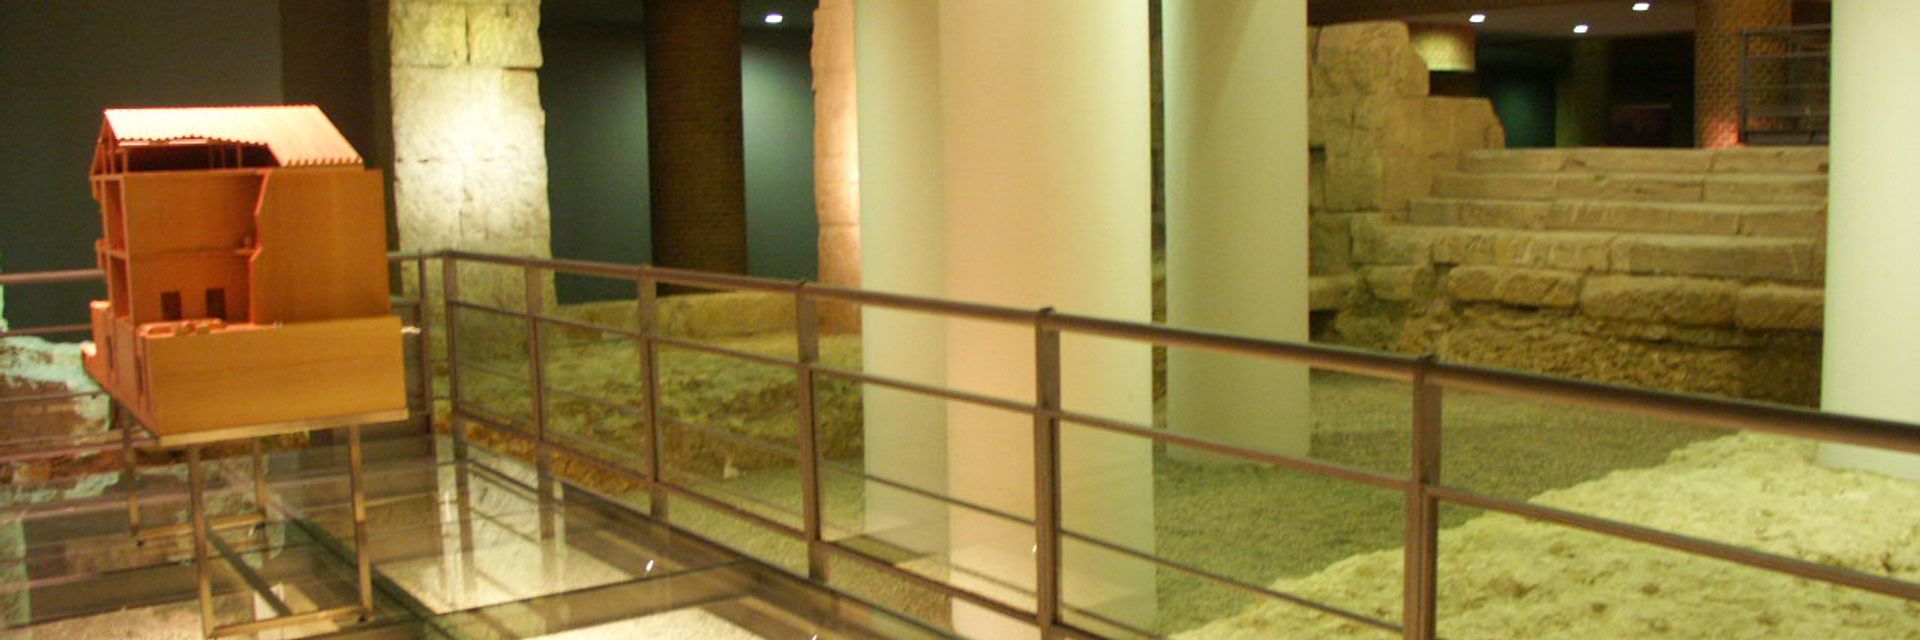 Museo del Puerto Fluvial de Caesaraugusta